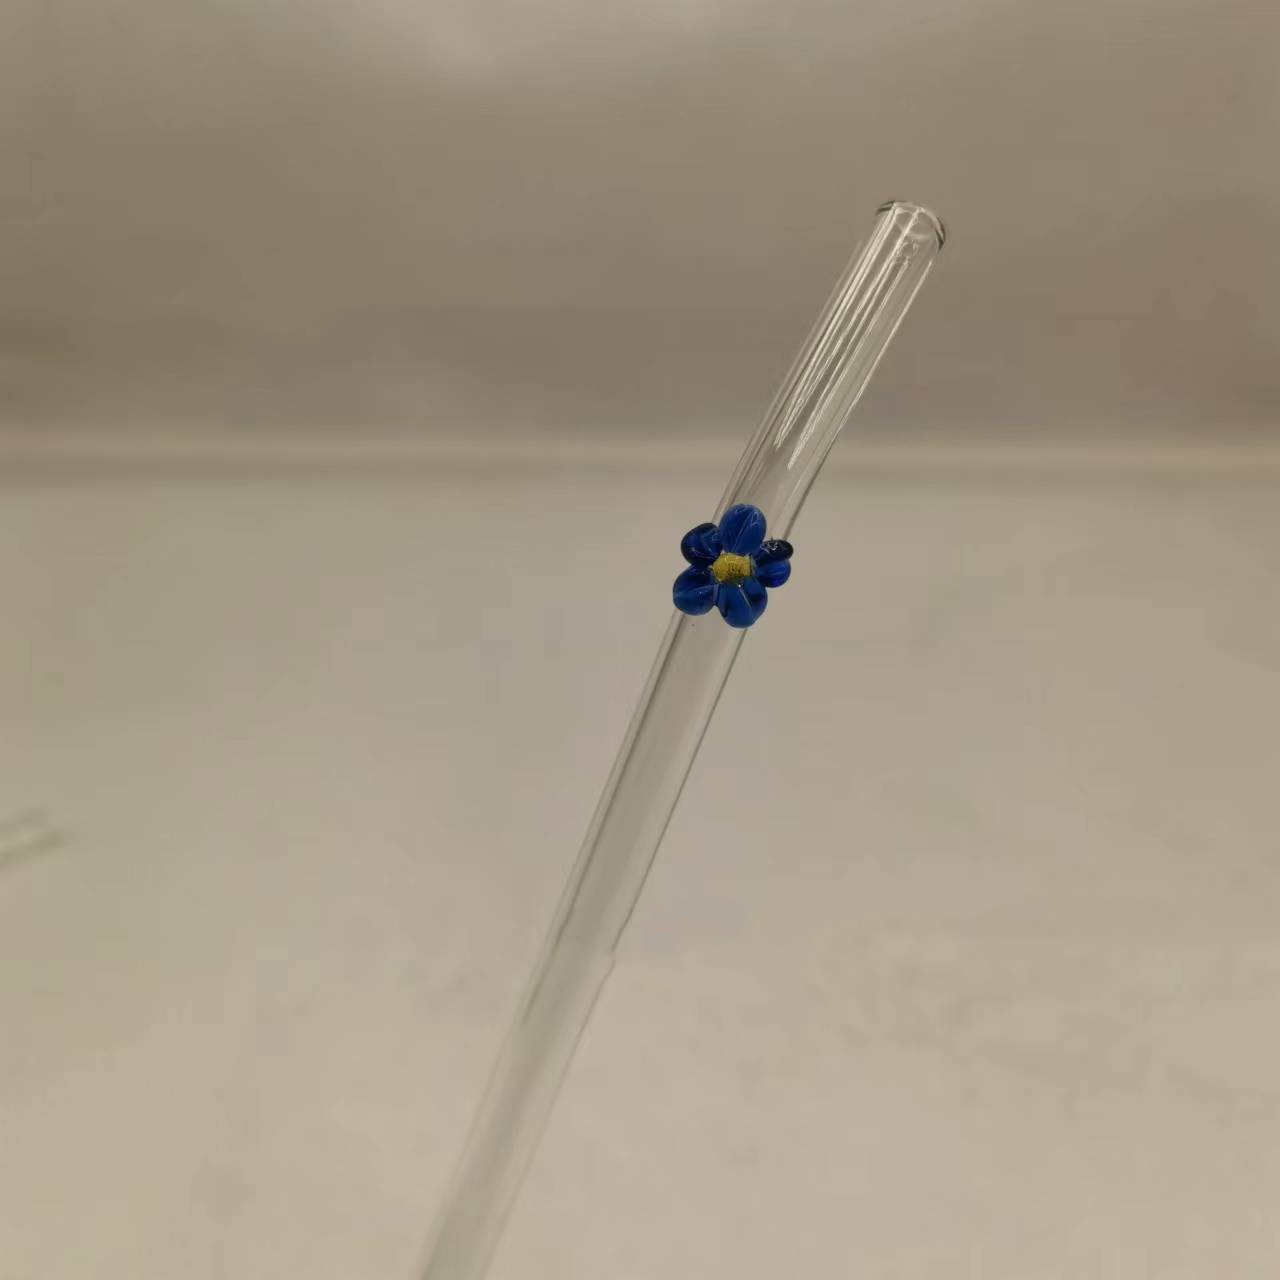 Glass straw blue flower